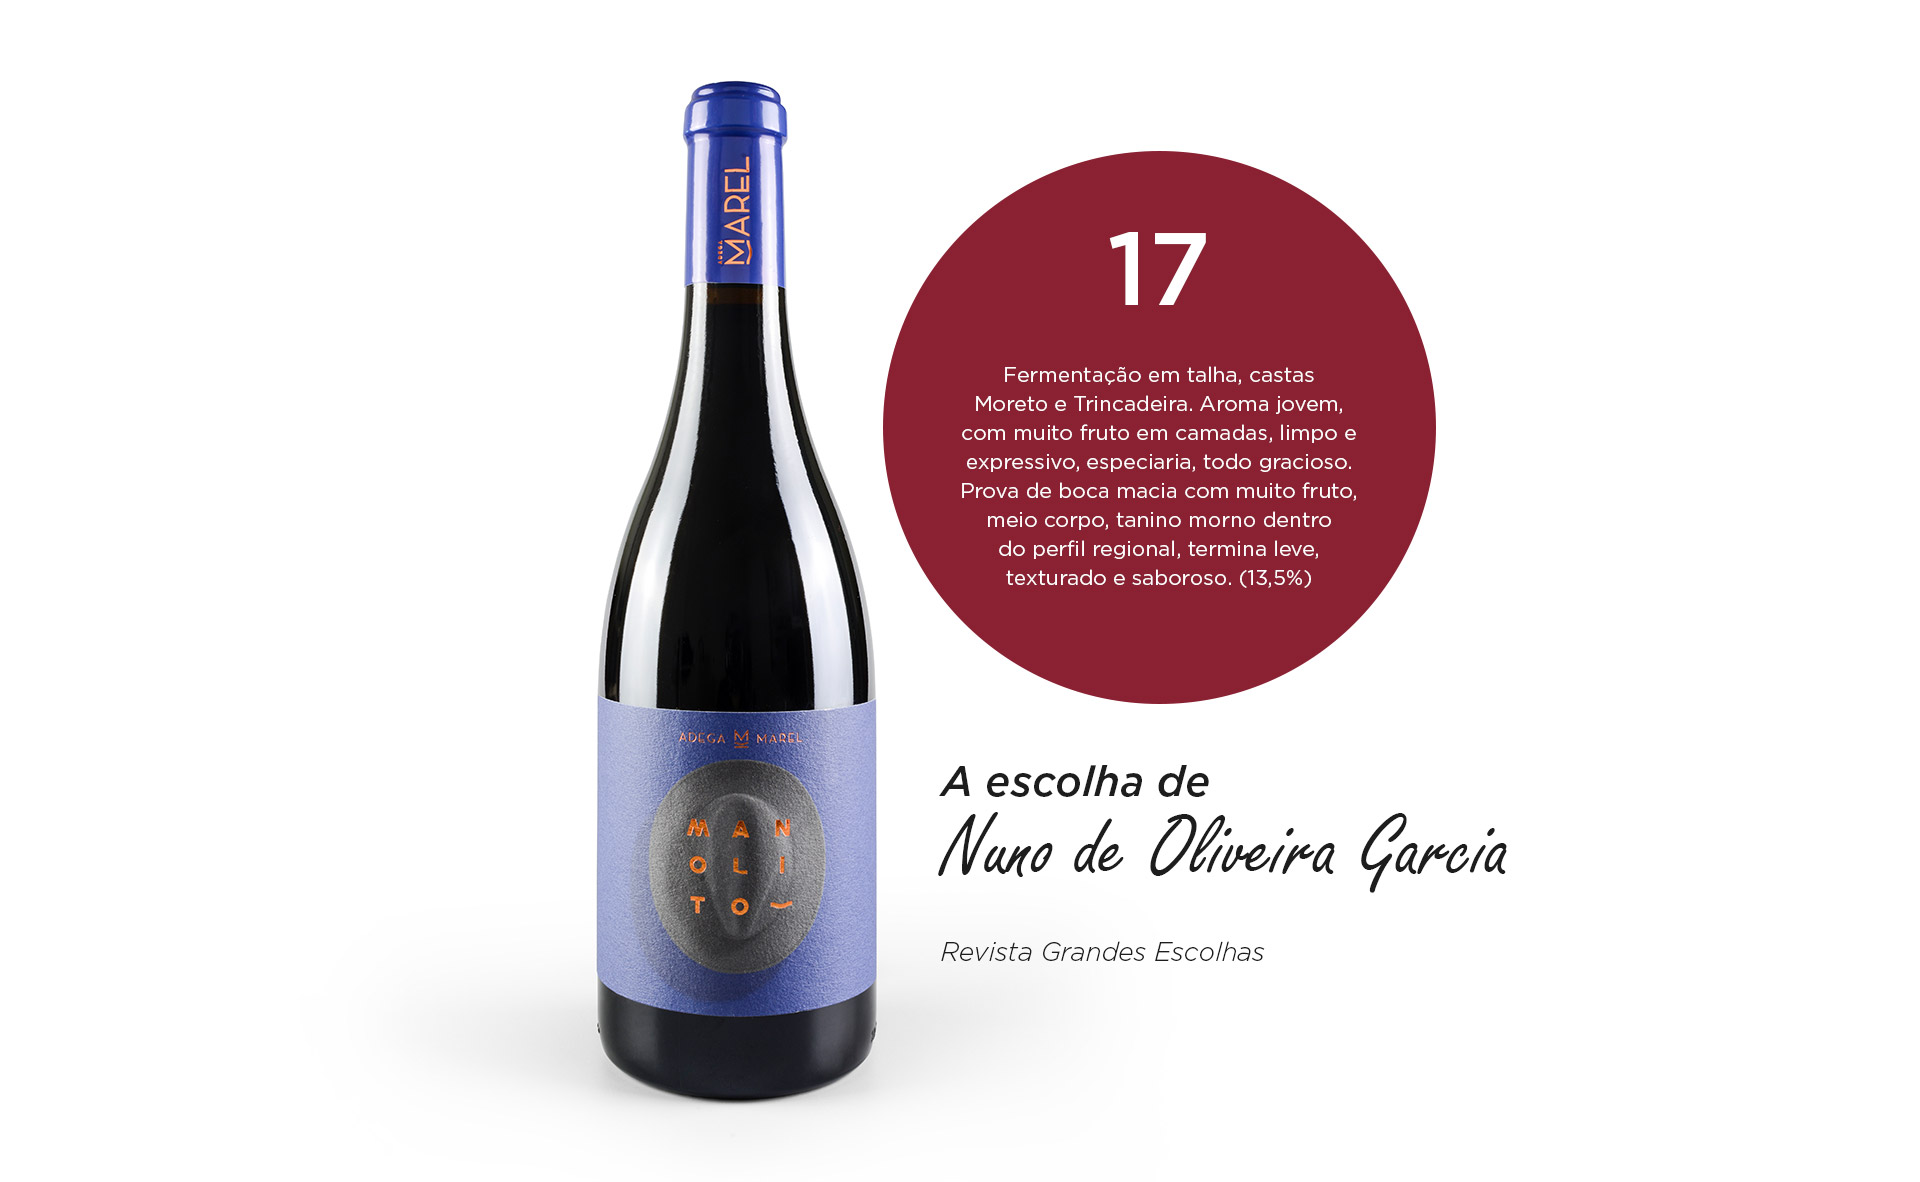 A escolha de Nuno de Oliveira Garcia - Revista Grandes Escolhas. Número 17 - Garrafa de Vinho Tinto Manolito